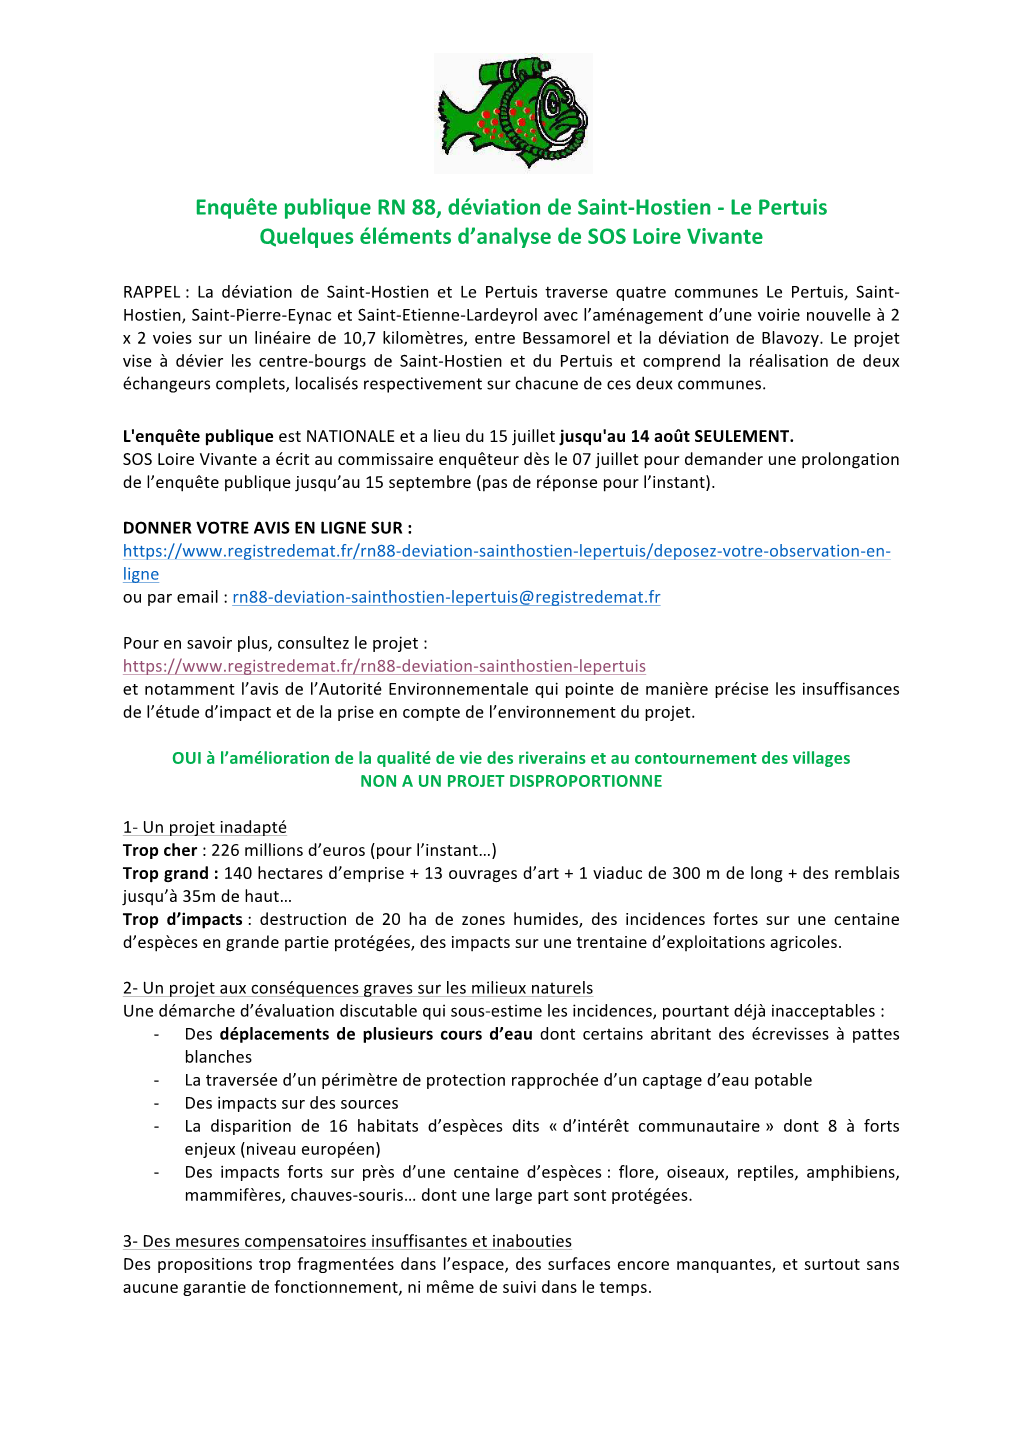 Enquête Publique RN 88, Déviation De Saint-Hostien - Le Pertuis Quelques Éléments D’Analyse De SOS Loire Vivante